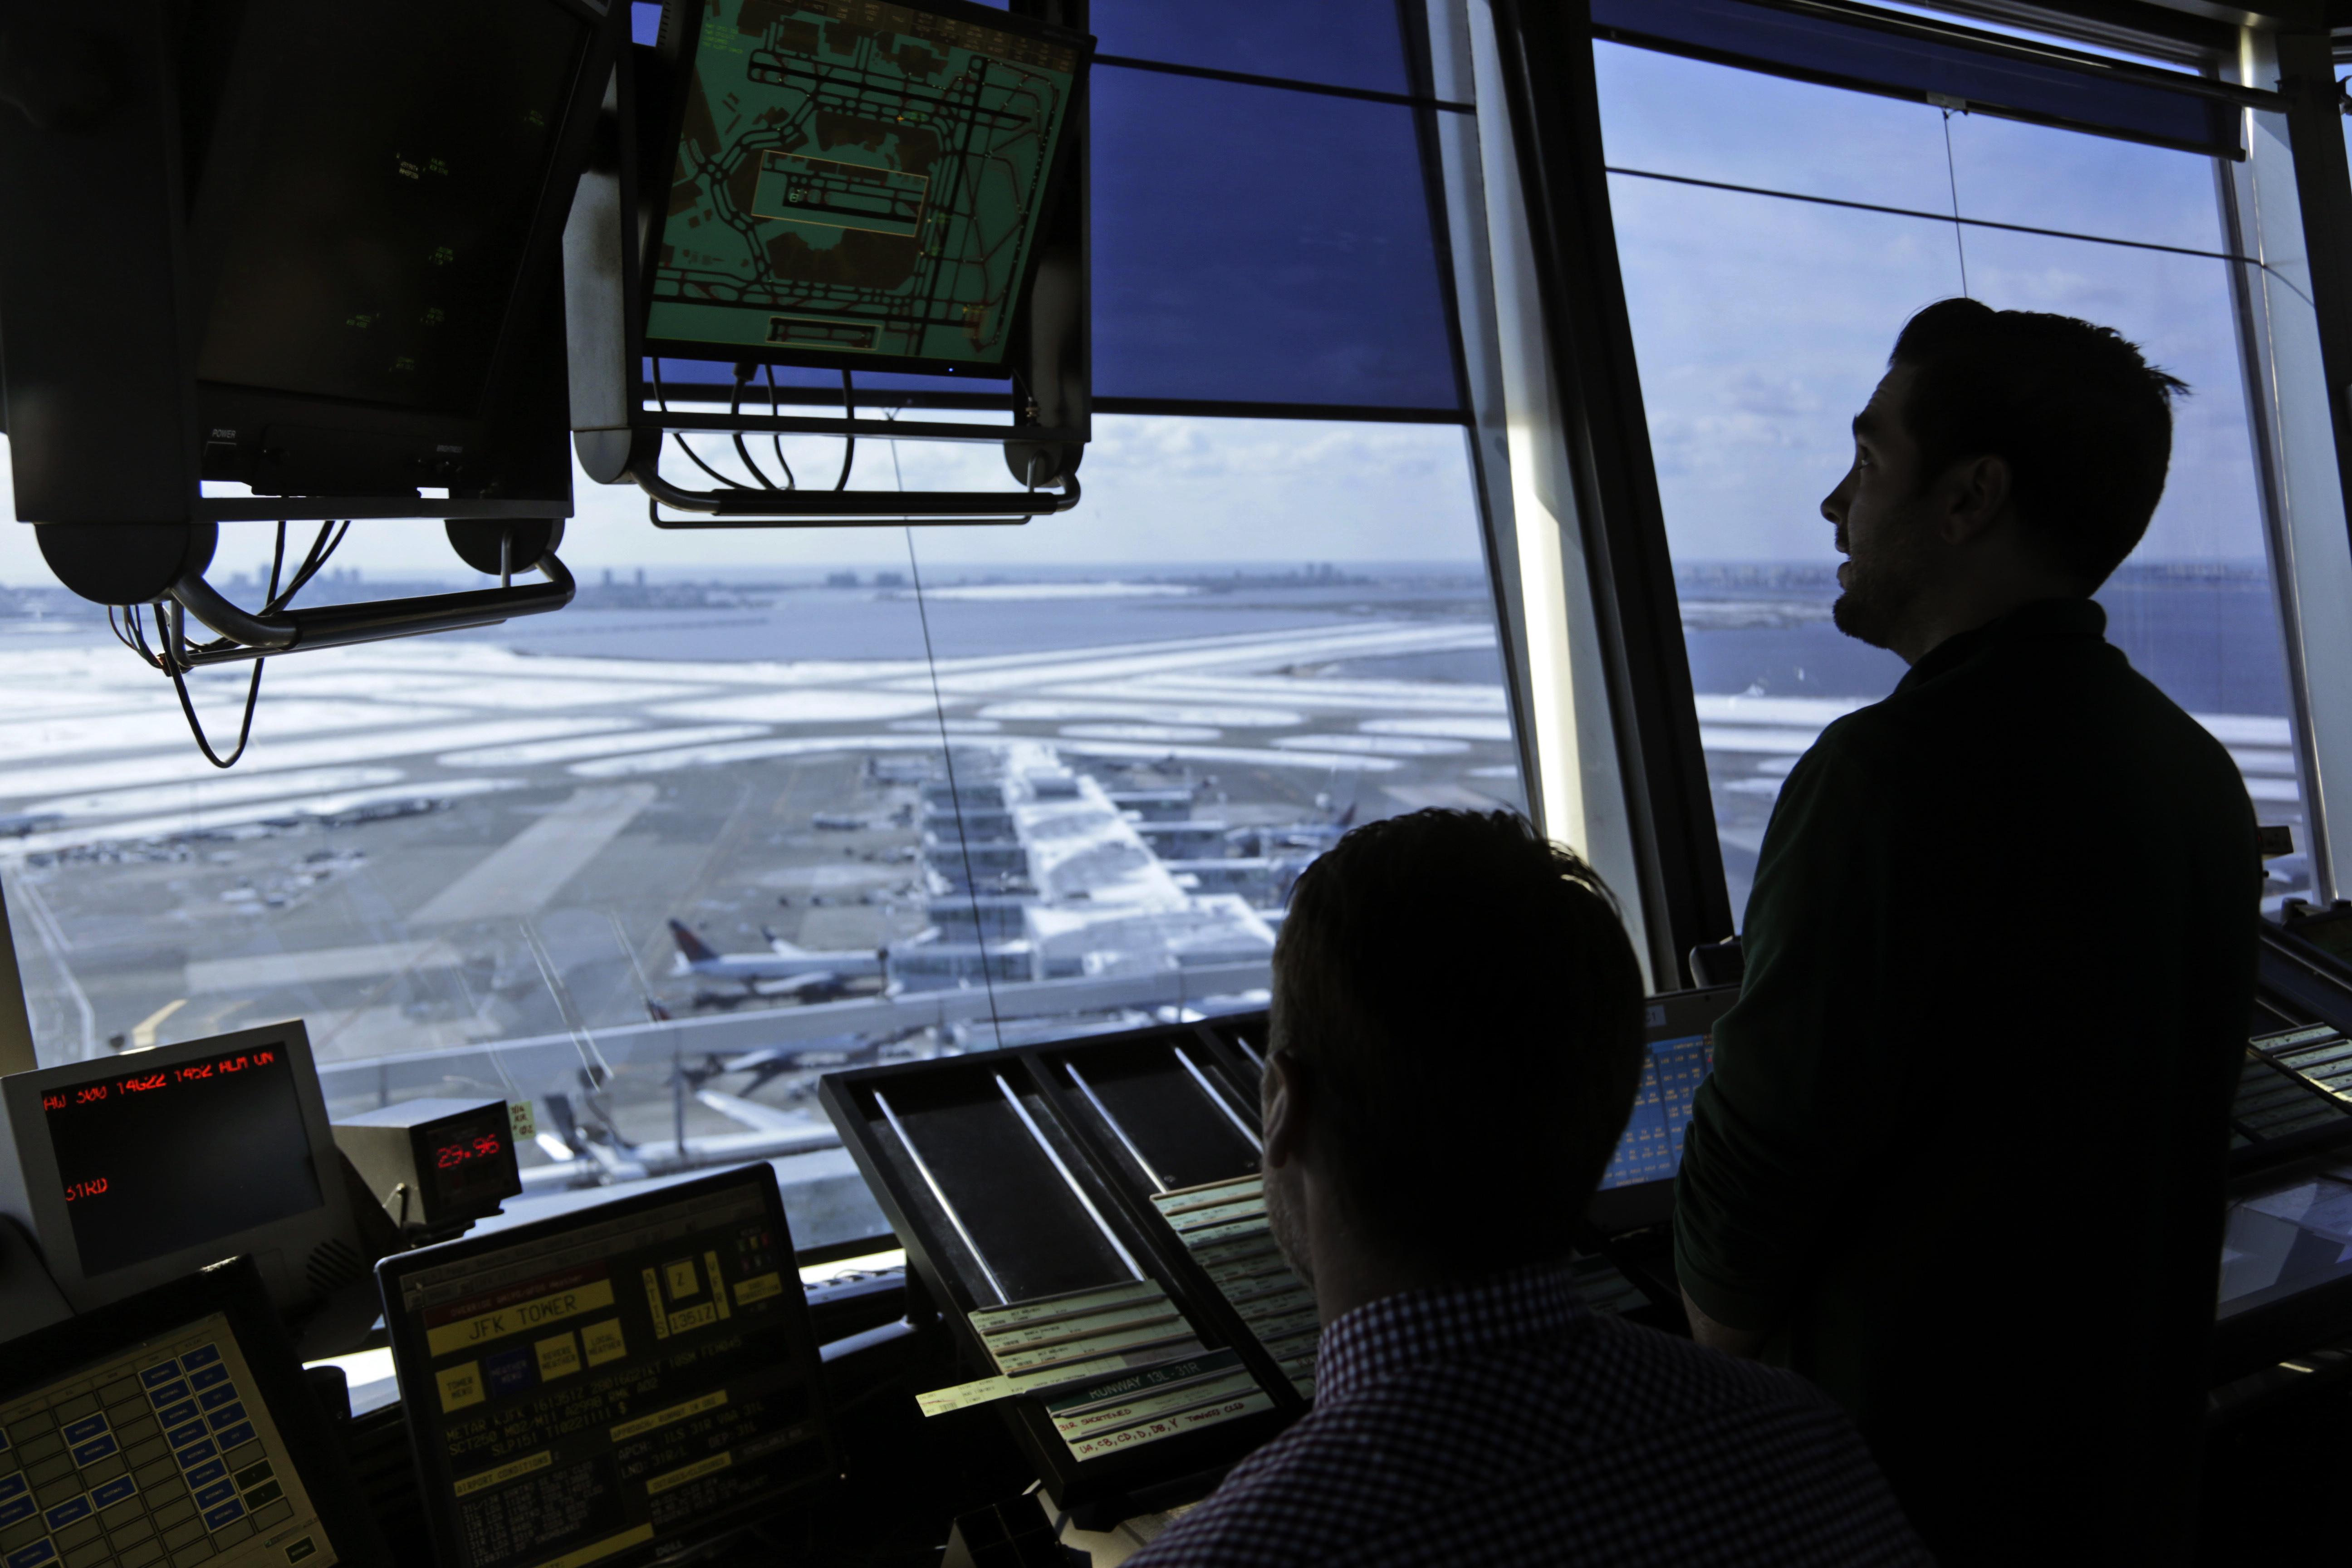 Air traffic control tower jobs